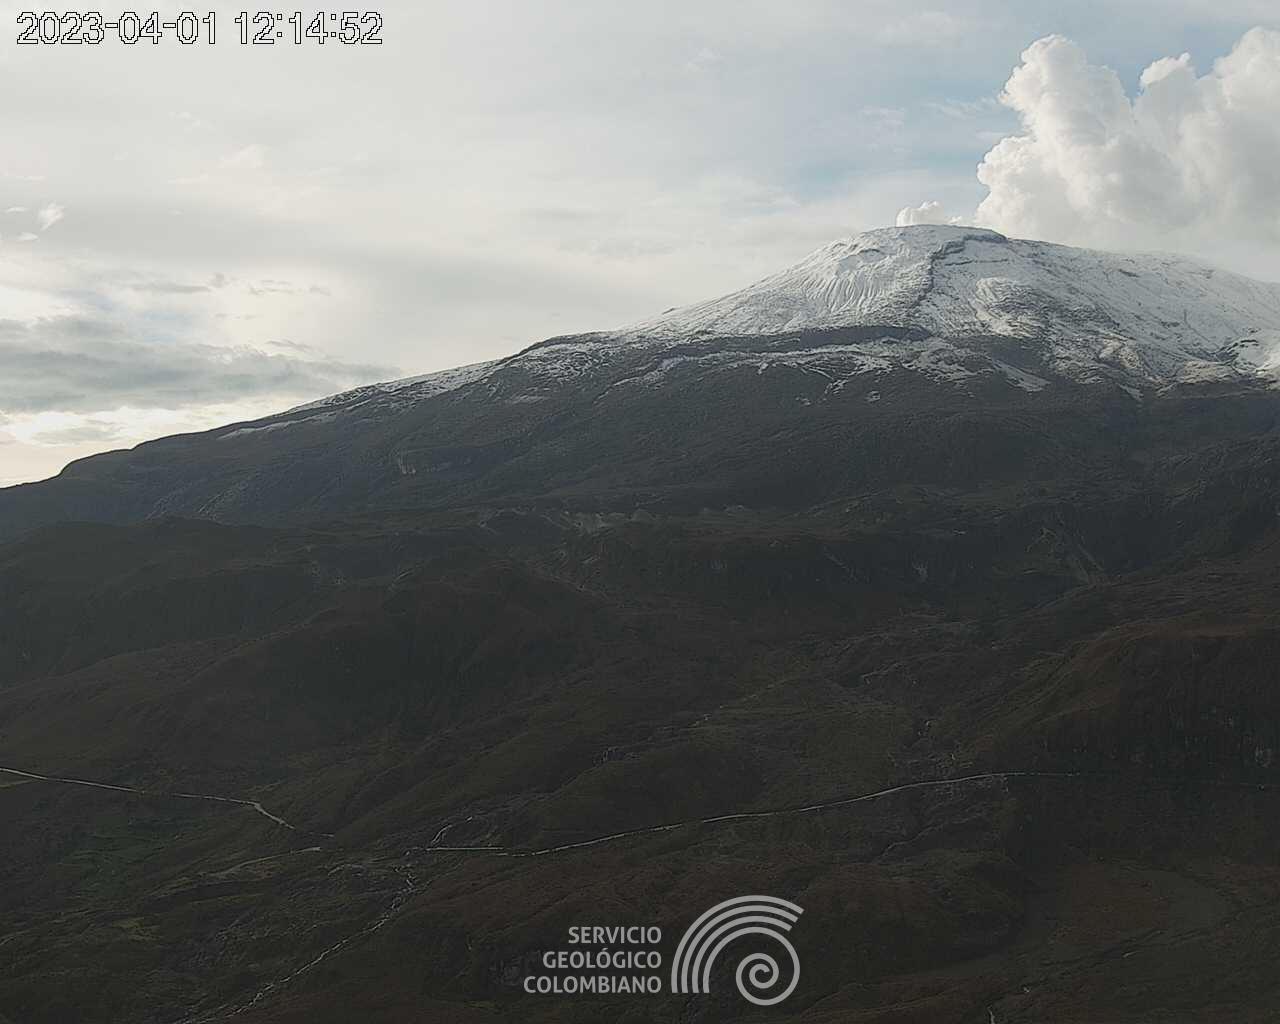 Alerta Naranja en el volcán Nevado del Ruiz continúa activa 4